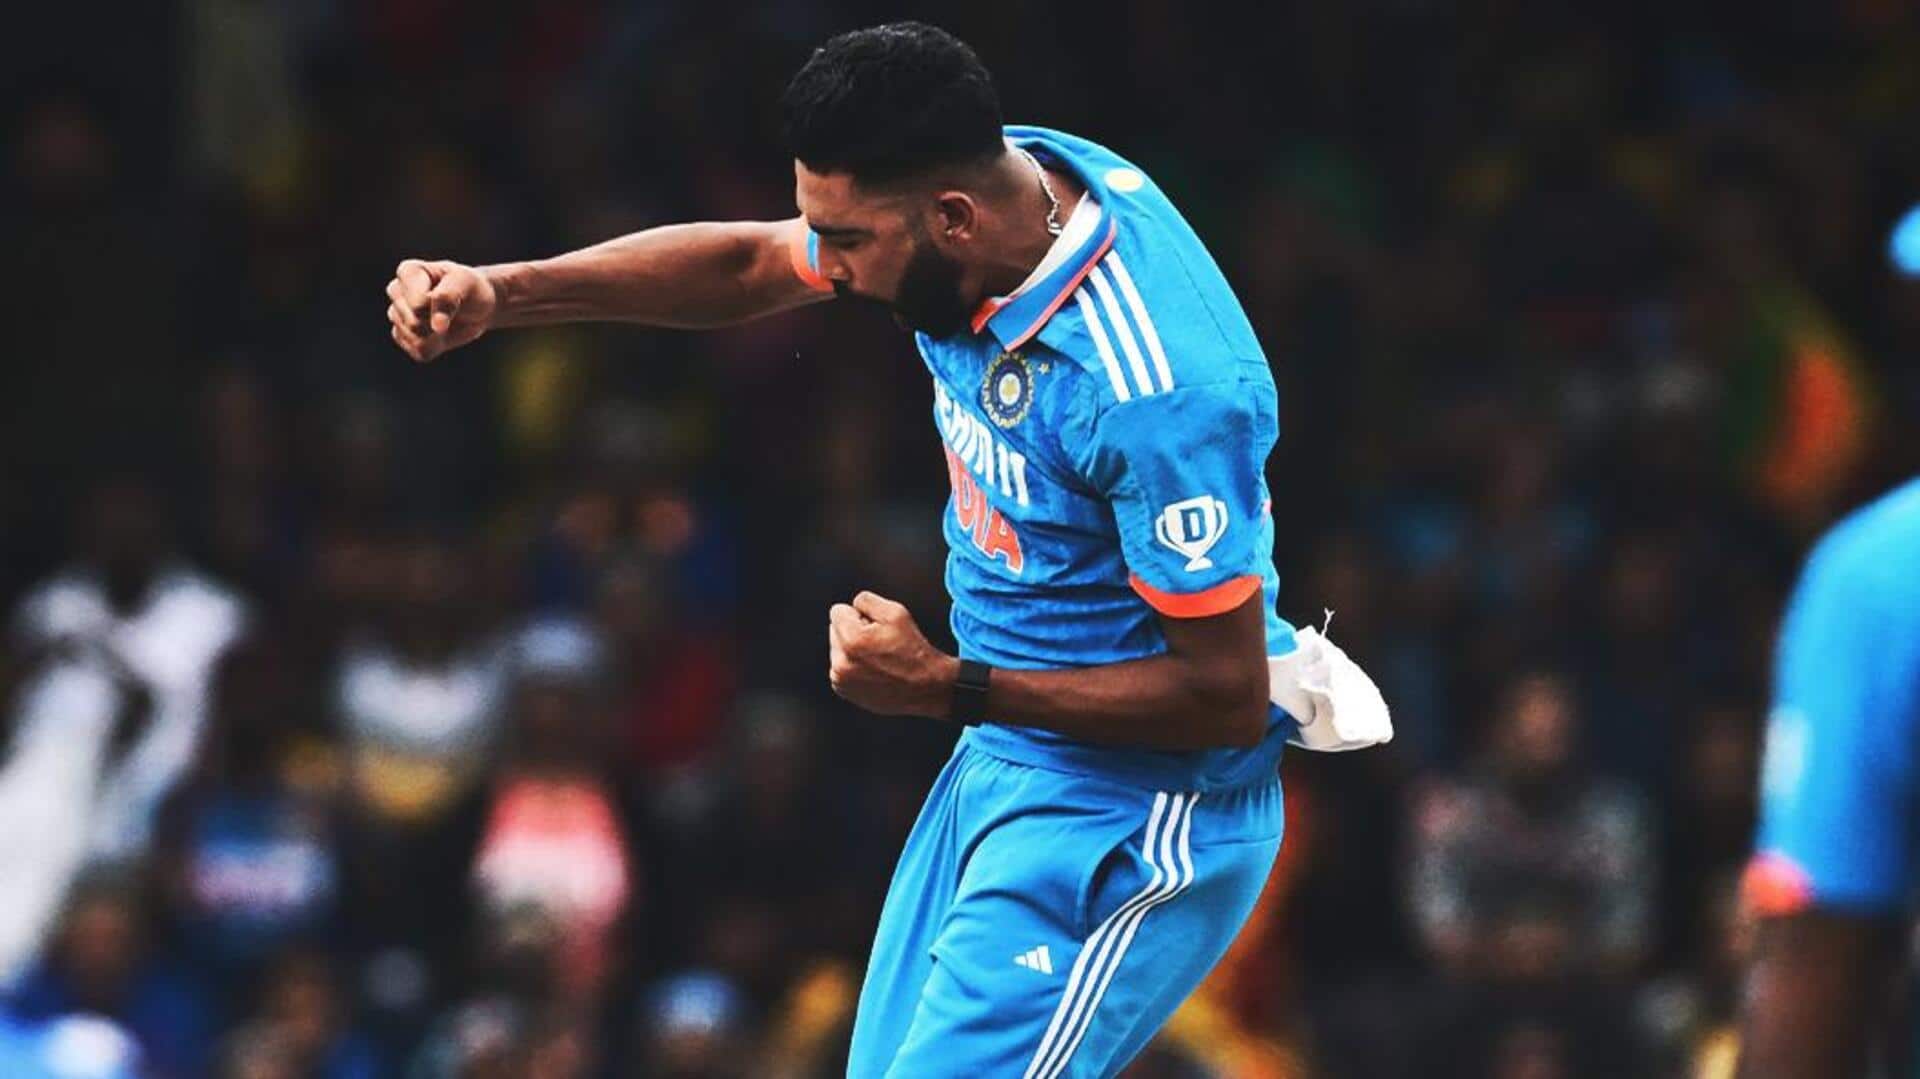 भारत बनाम ऑस्ट्रेलिया: मोहम्मद सिराज खेलेंगे दूसरा वनडे मुकाबला, शार्दुल ठाकुर होंगे बाहर- रिपोर्ट 